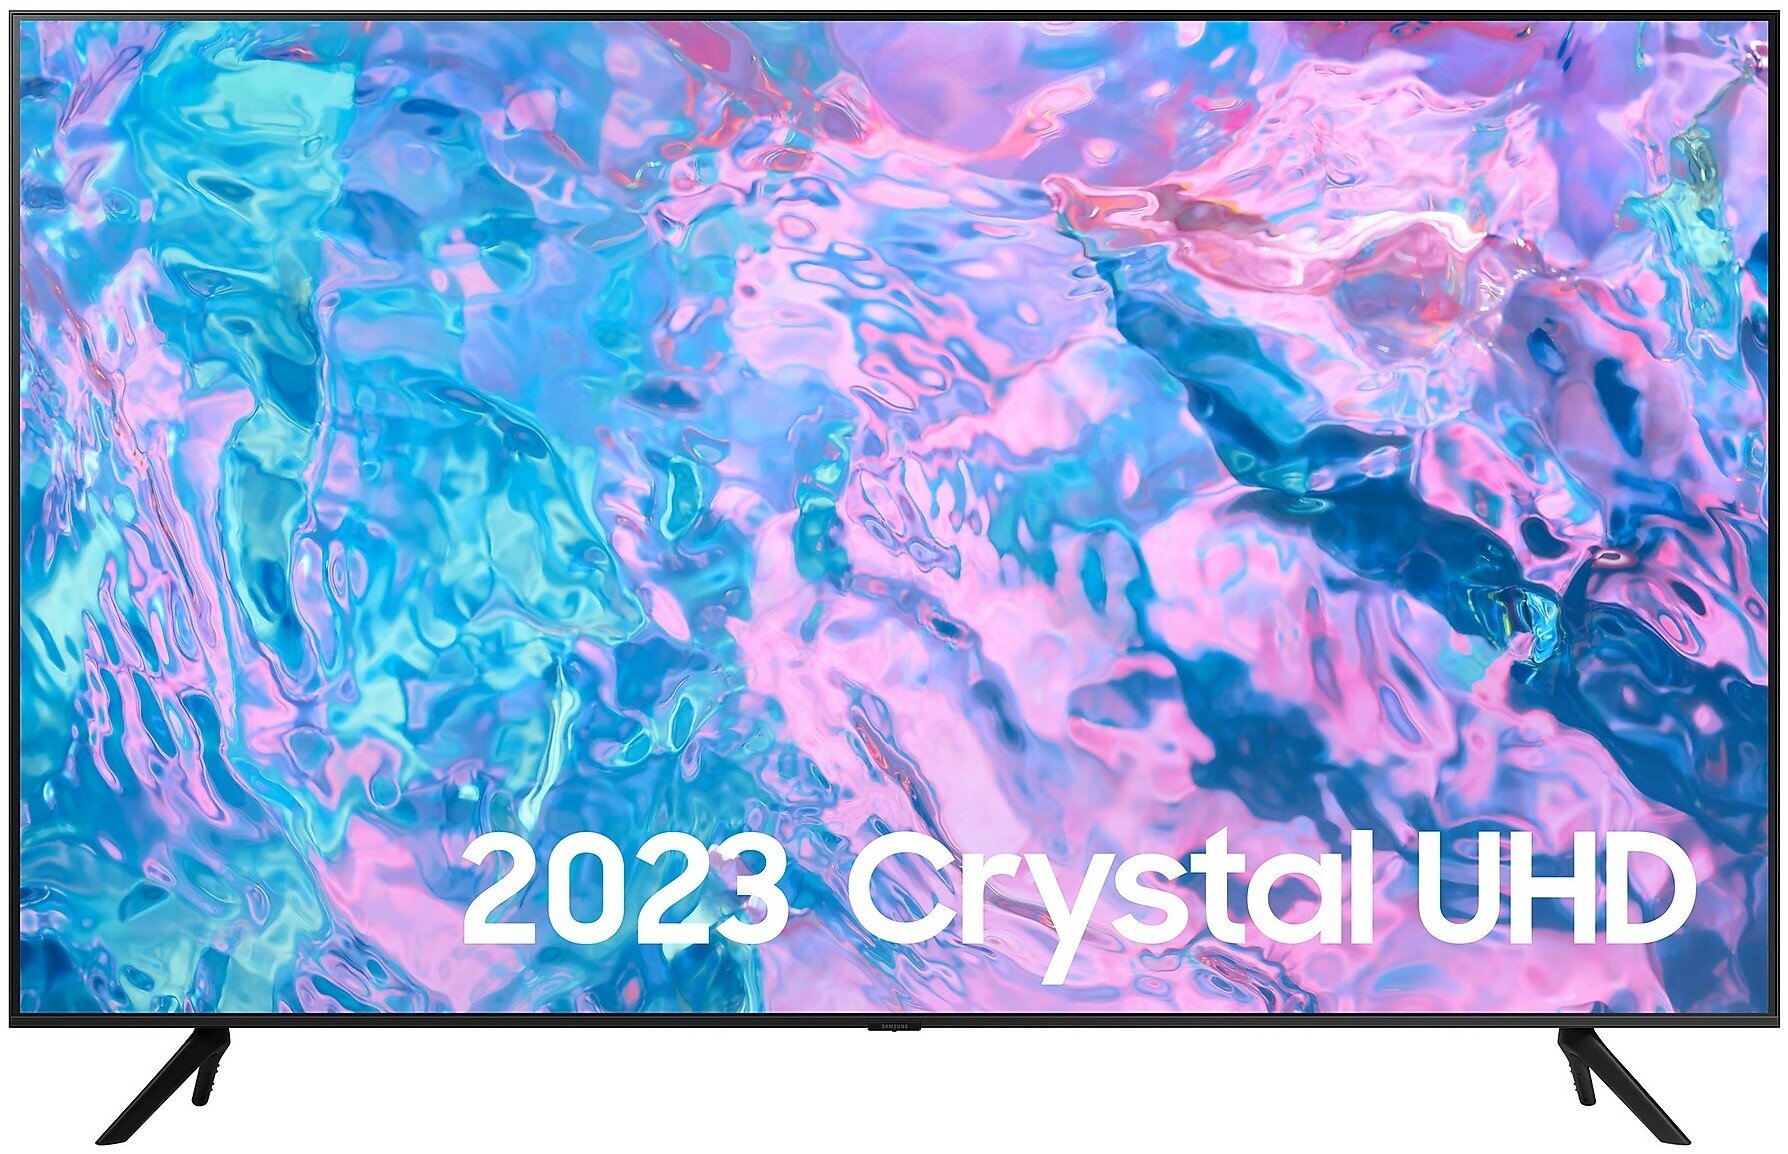 50" Телевизор Samsung UE50CU7100U 2023 Crystal UHD HDR LED